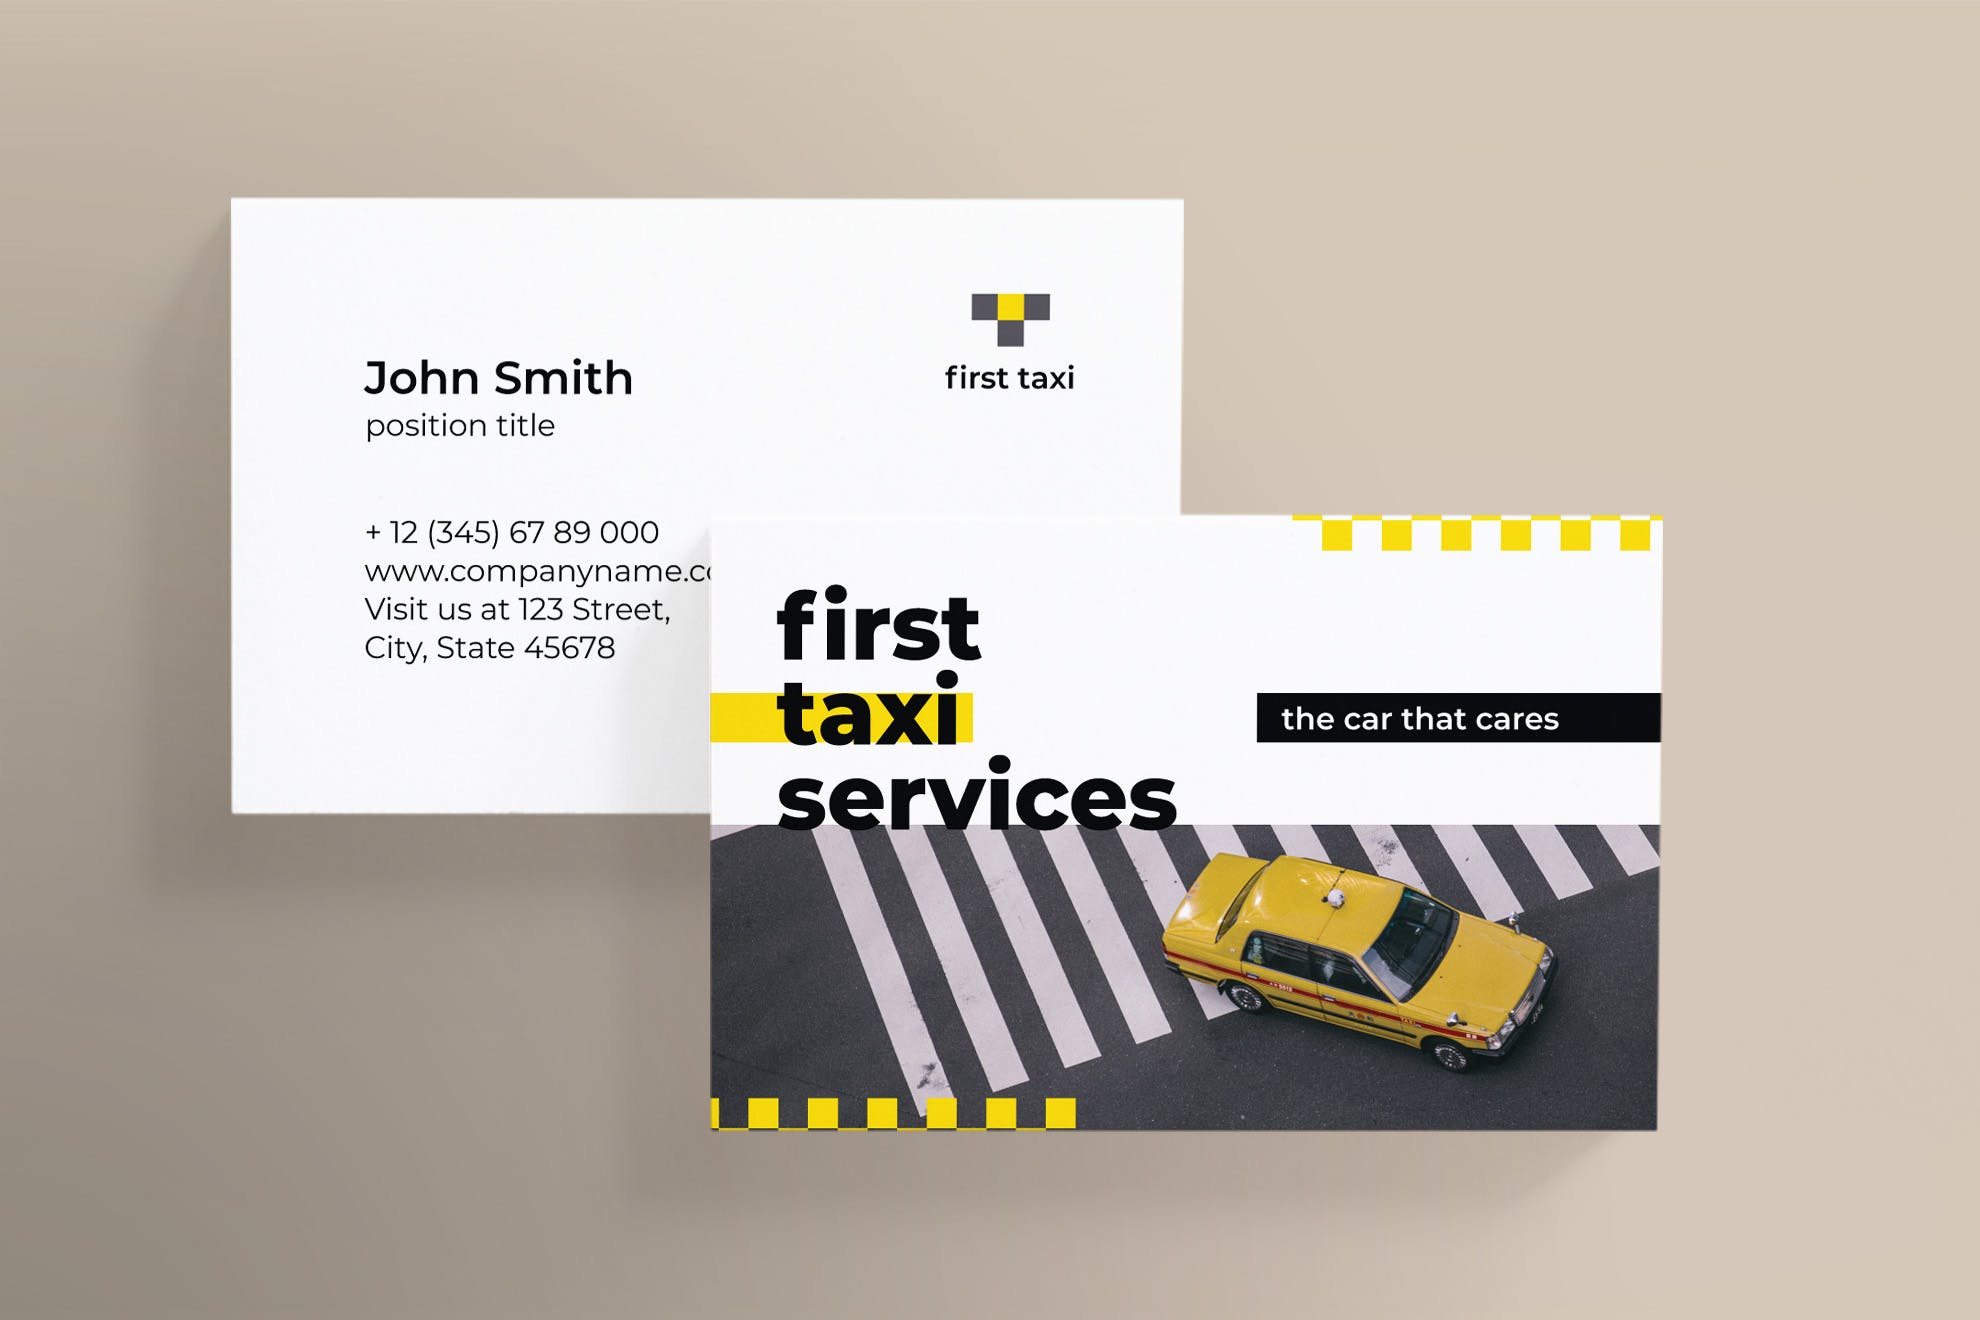 出租车/网约车服务企业司机名片设计模板 Taxi Services Business Card插图(2)